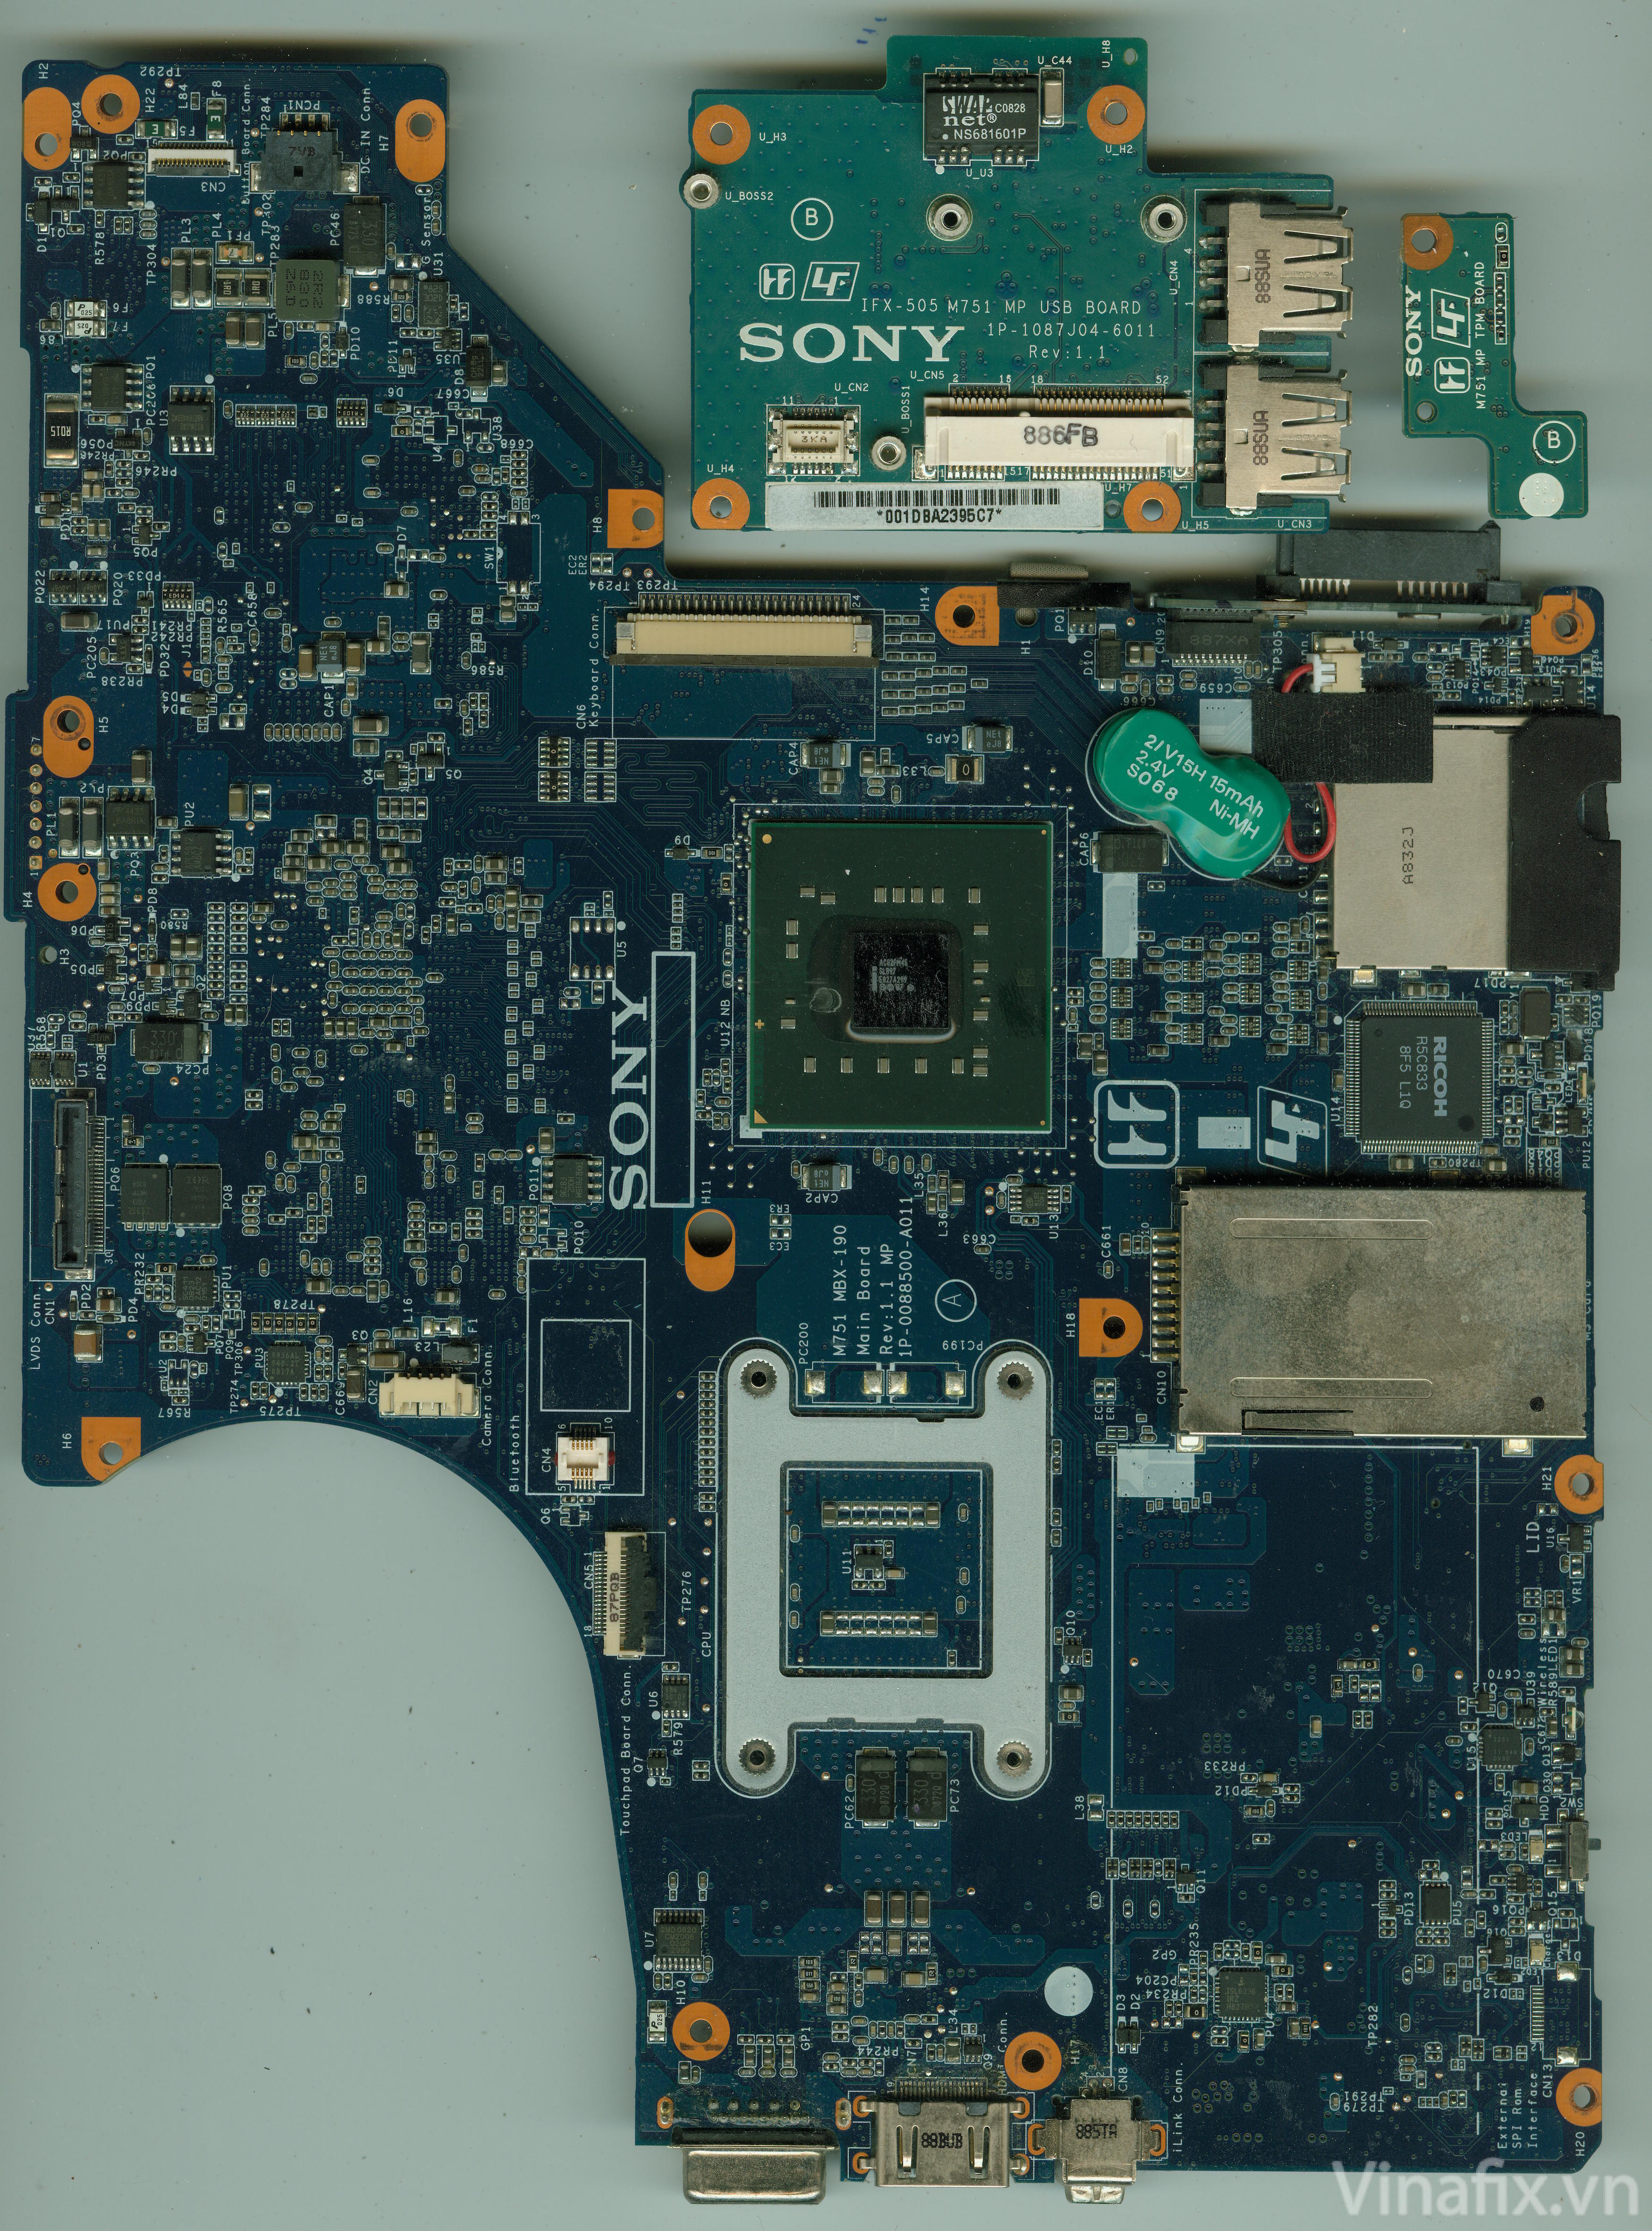 Sony PCG-5P2L - VGN-SR290 - MBX-190 M751 Rev 1.1 MP 1P-0088500-A011